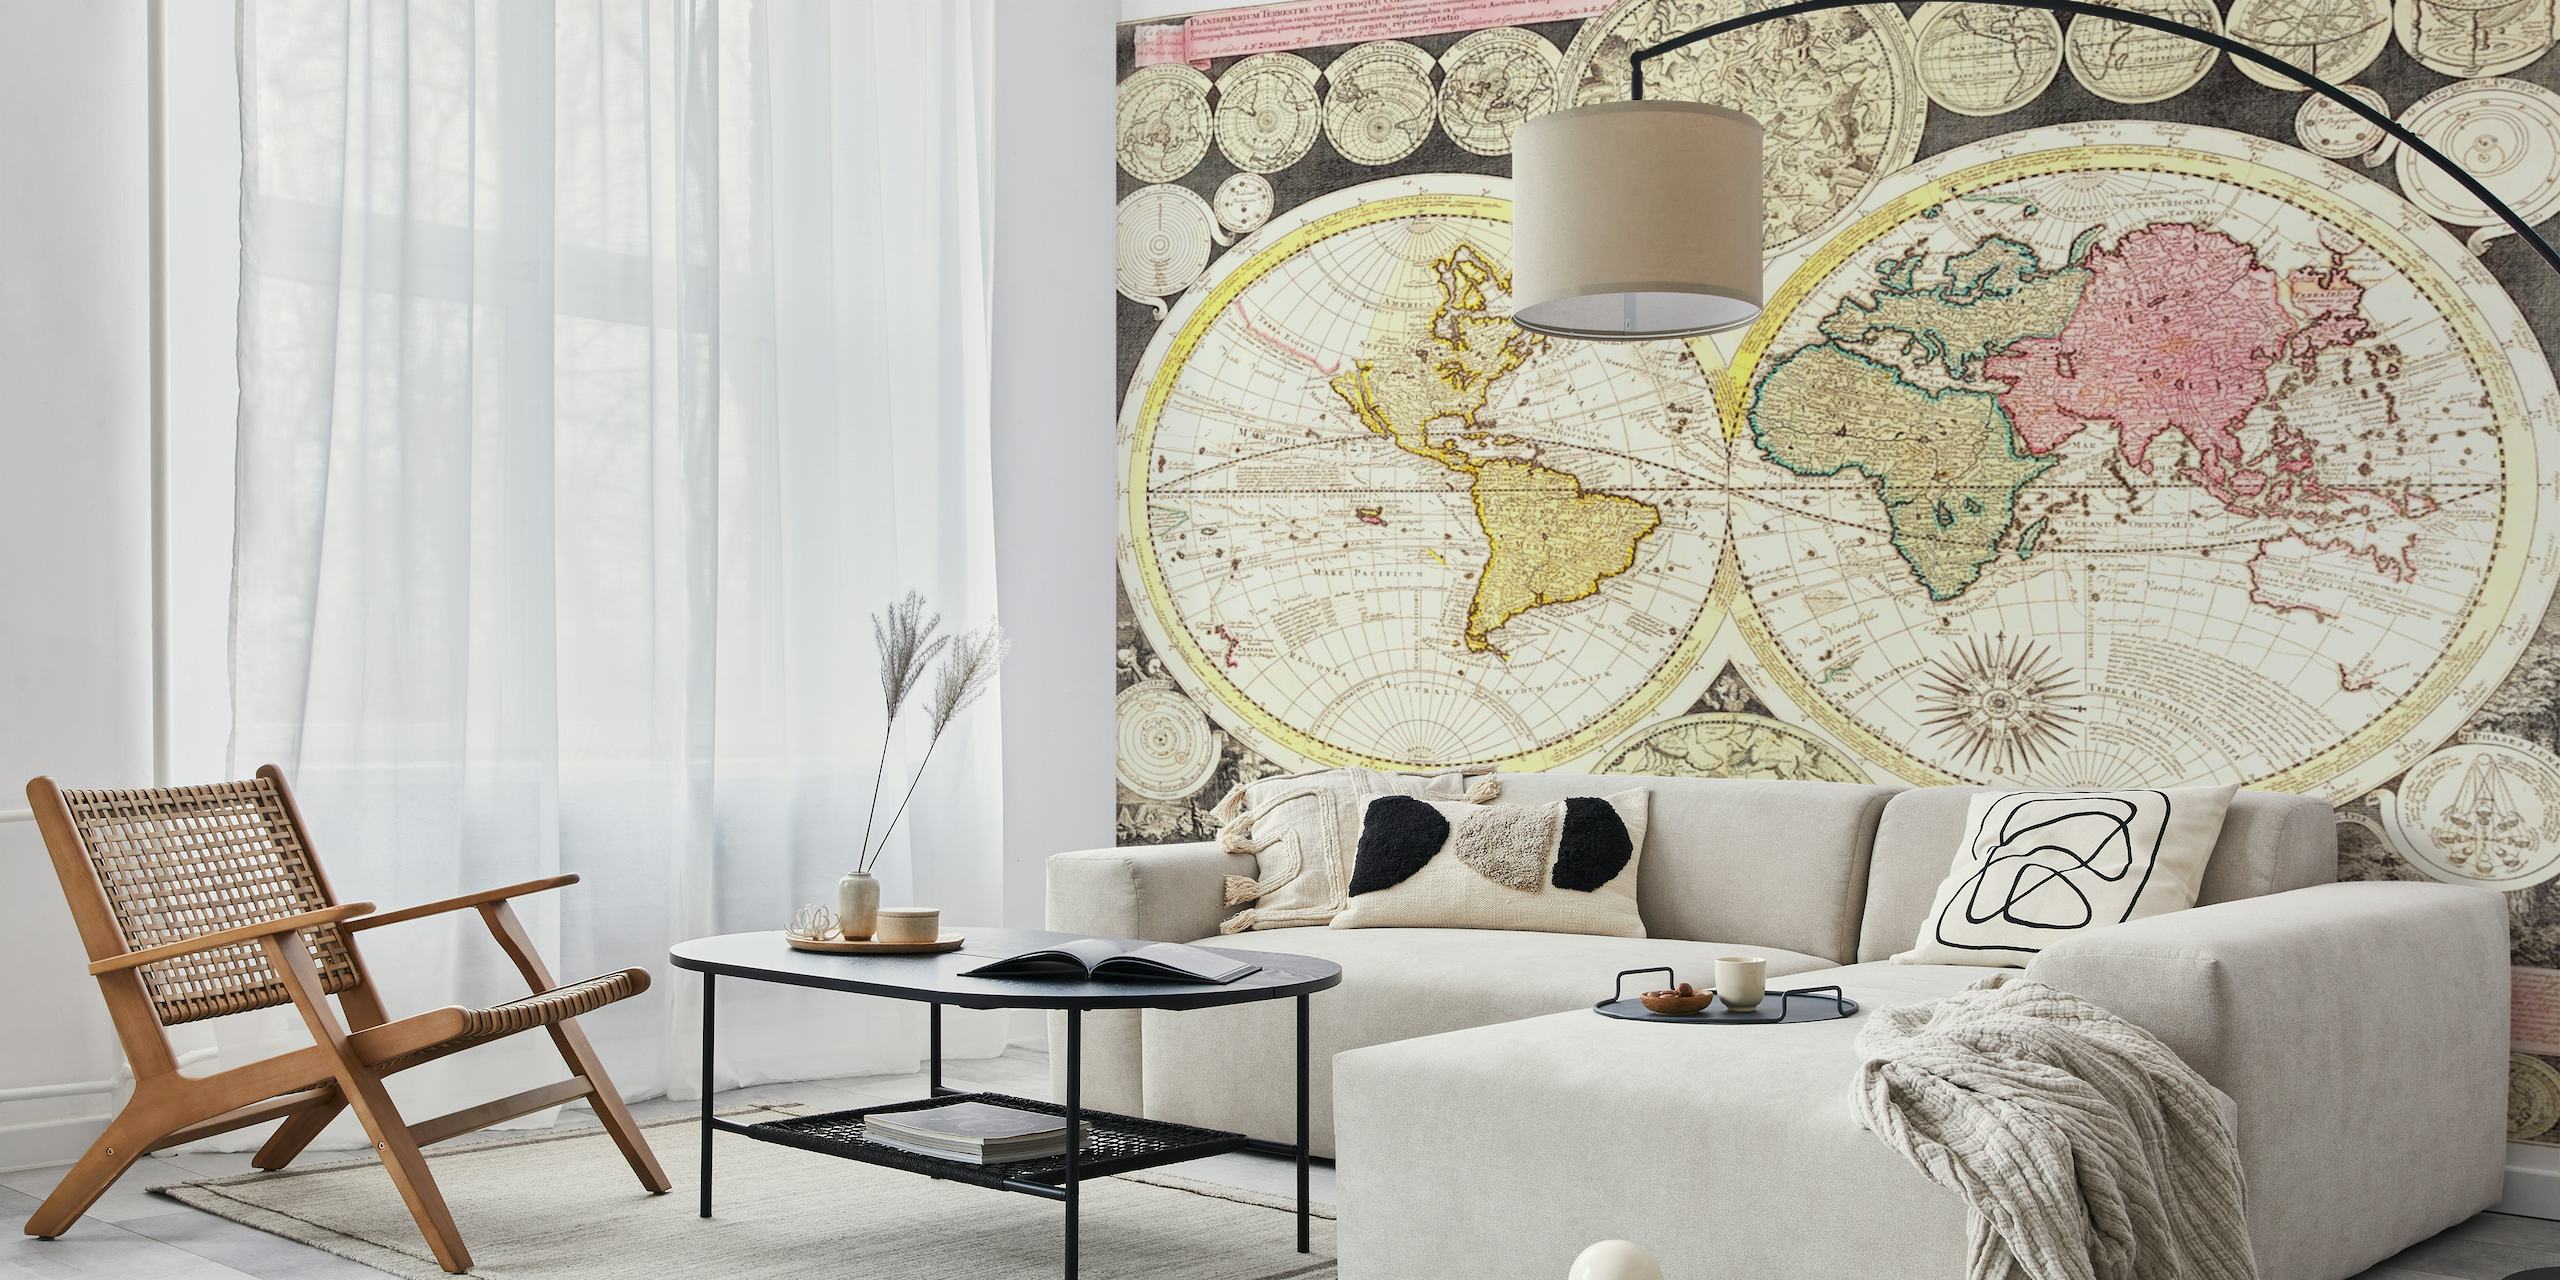 Antikes Wandgemälde mit einer Weltkarte mit zwei Hemisphären, Vintage-Farben und dekorativen Randdetails